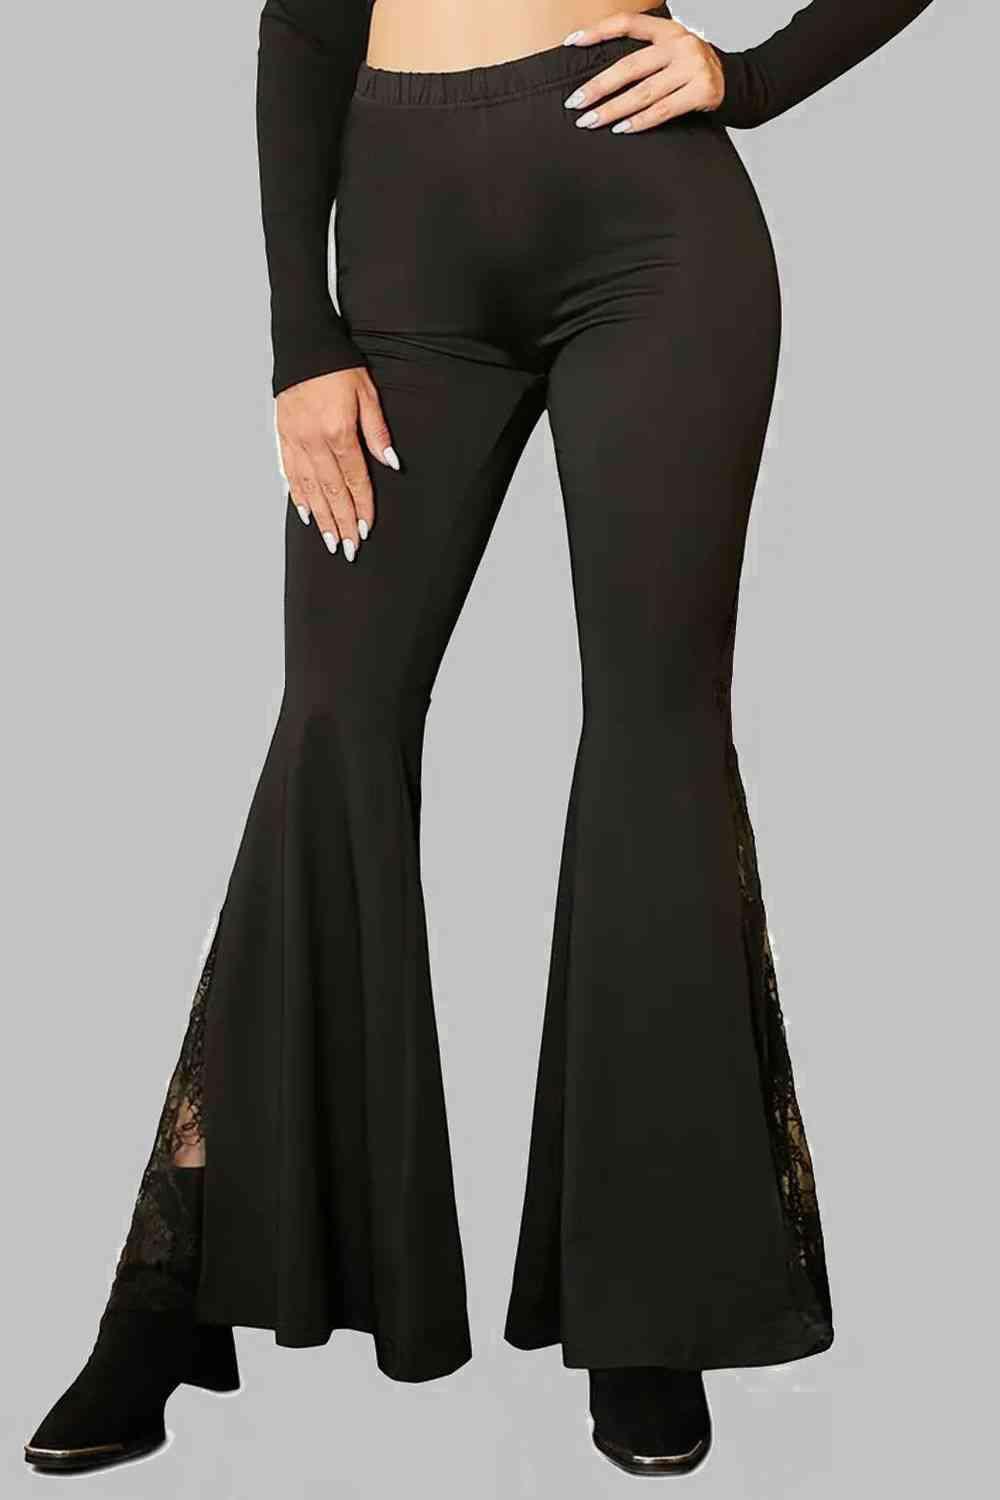 Simple Sophistication Black Lace Flare Pants - MXSTUDIO.COM